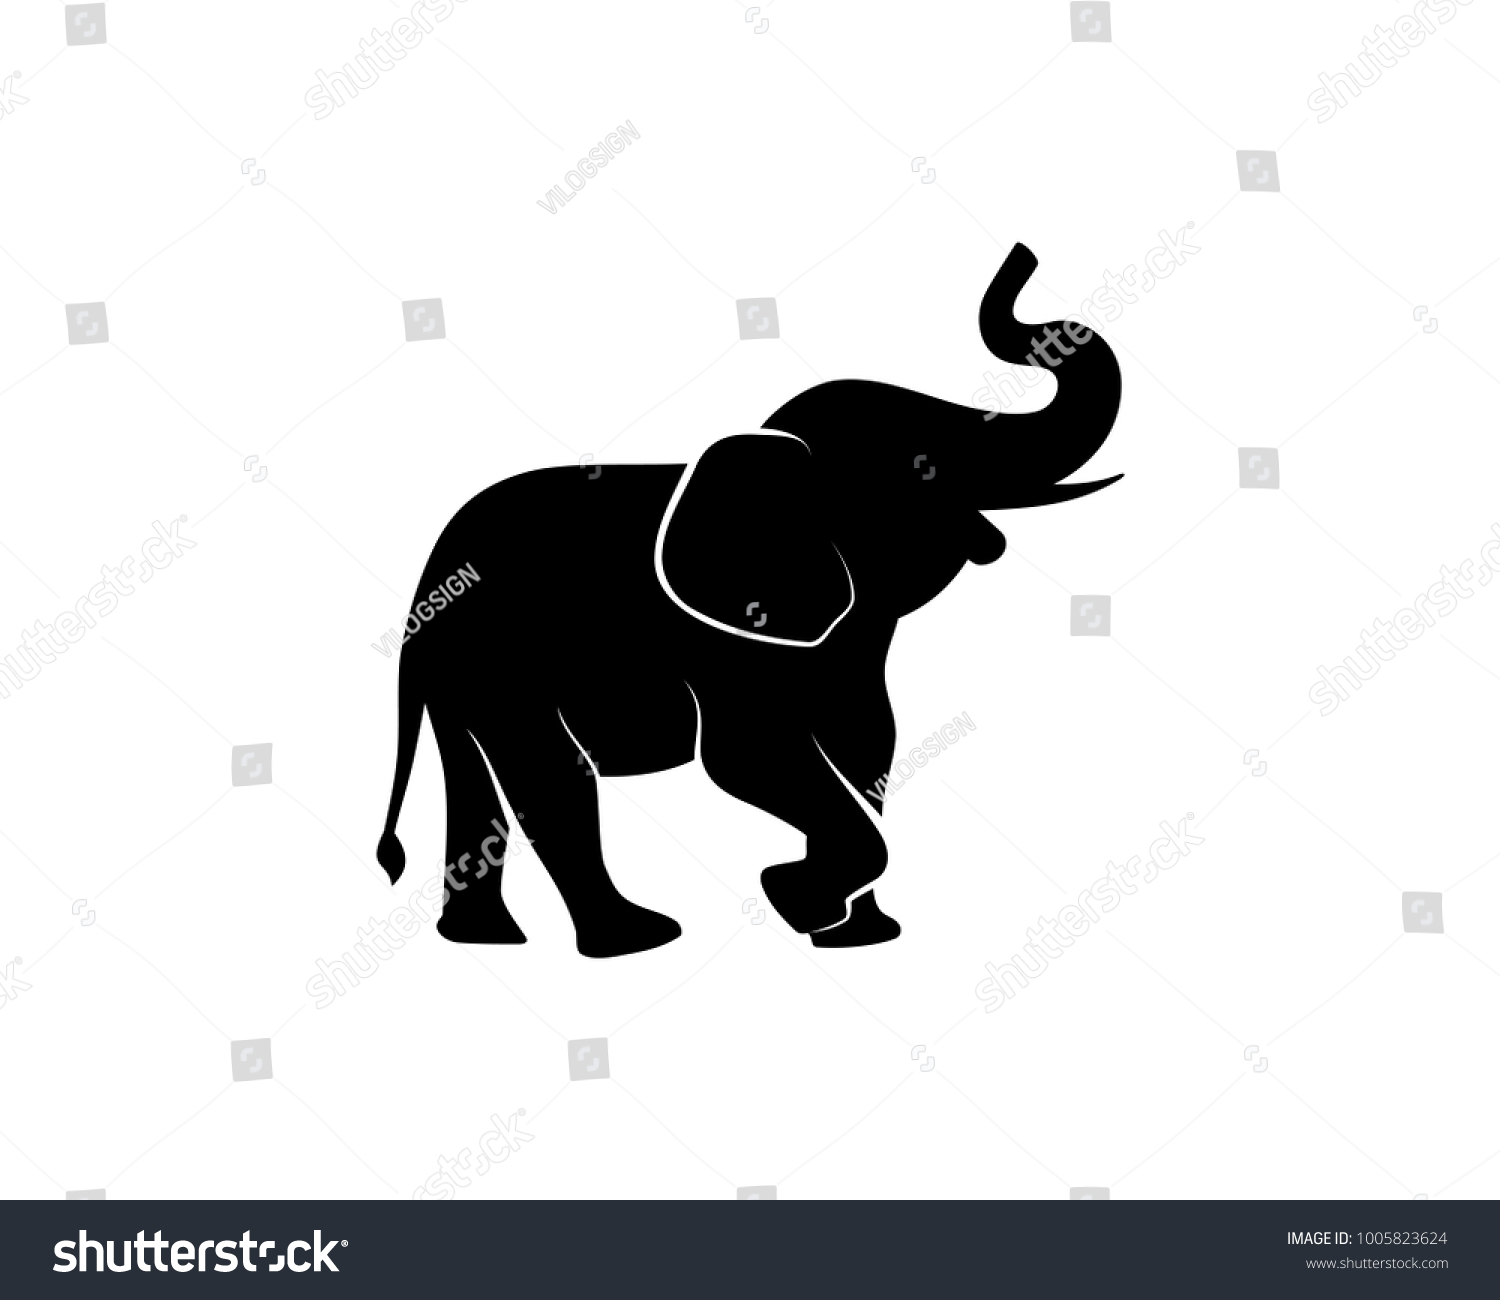 動物園の黒い象のイラスト動物のシルエットロゴベクター画像 のベクター画像素材 ロイヤリティフリー